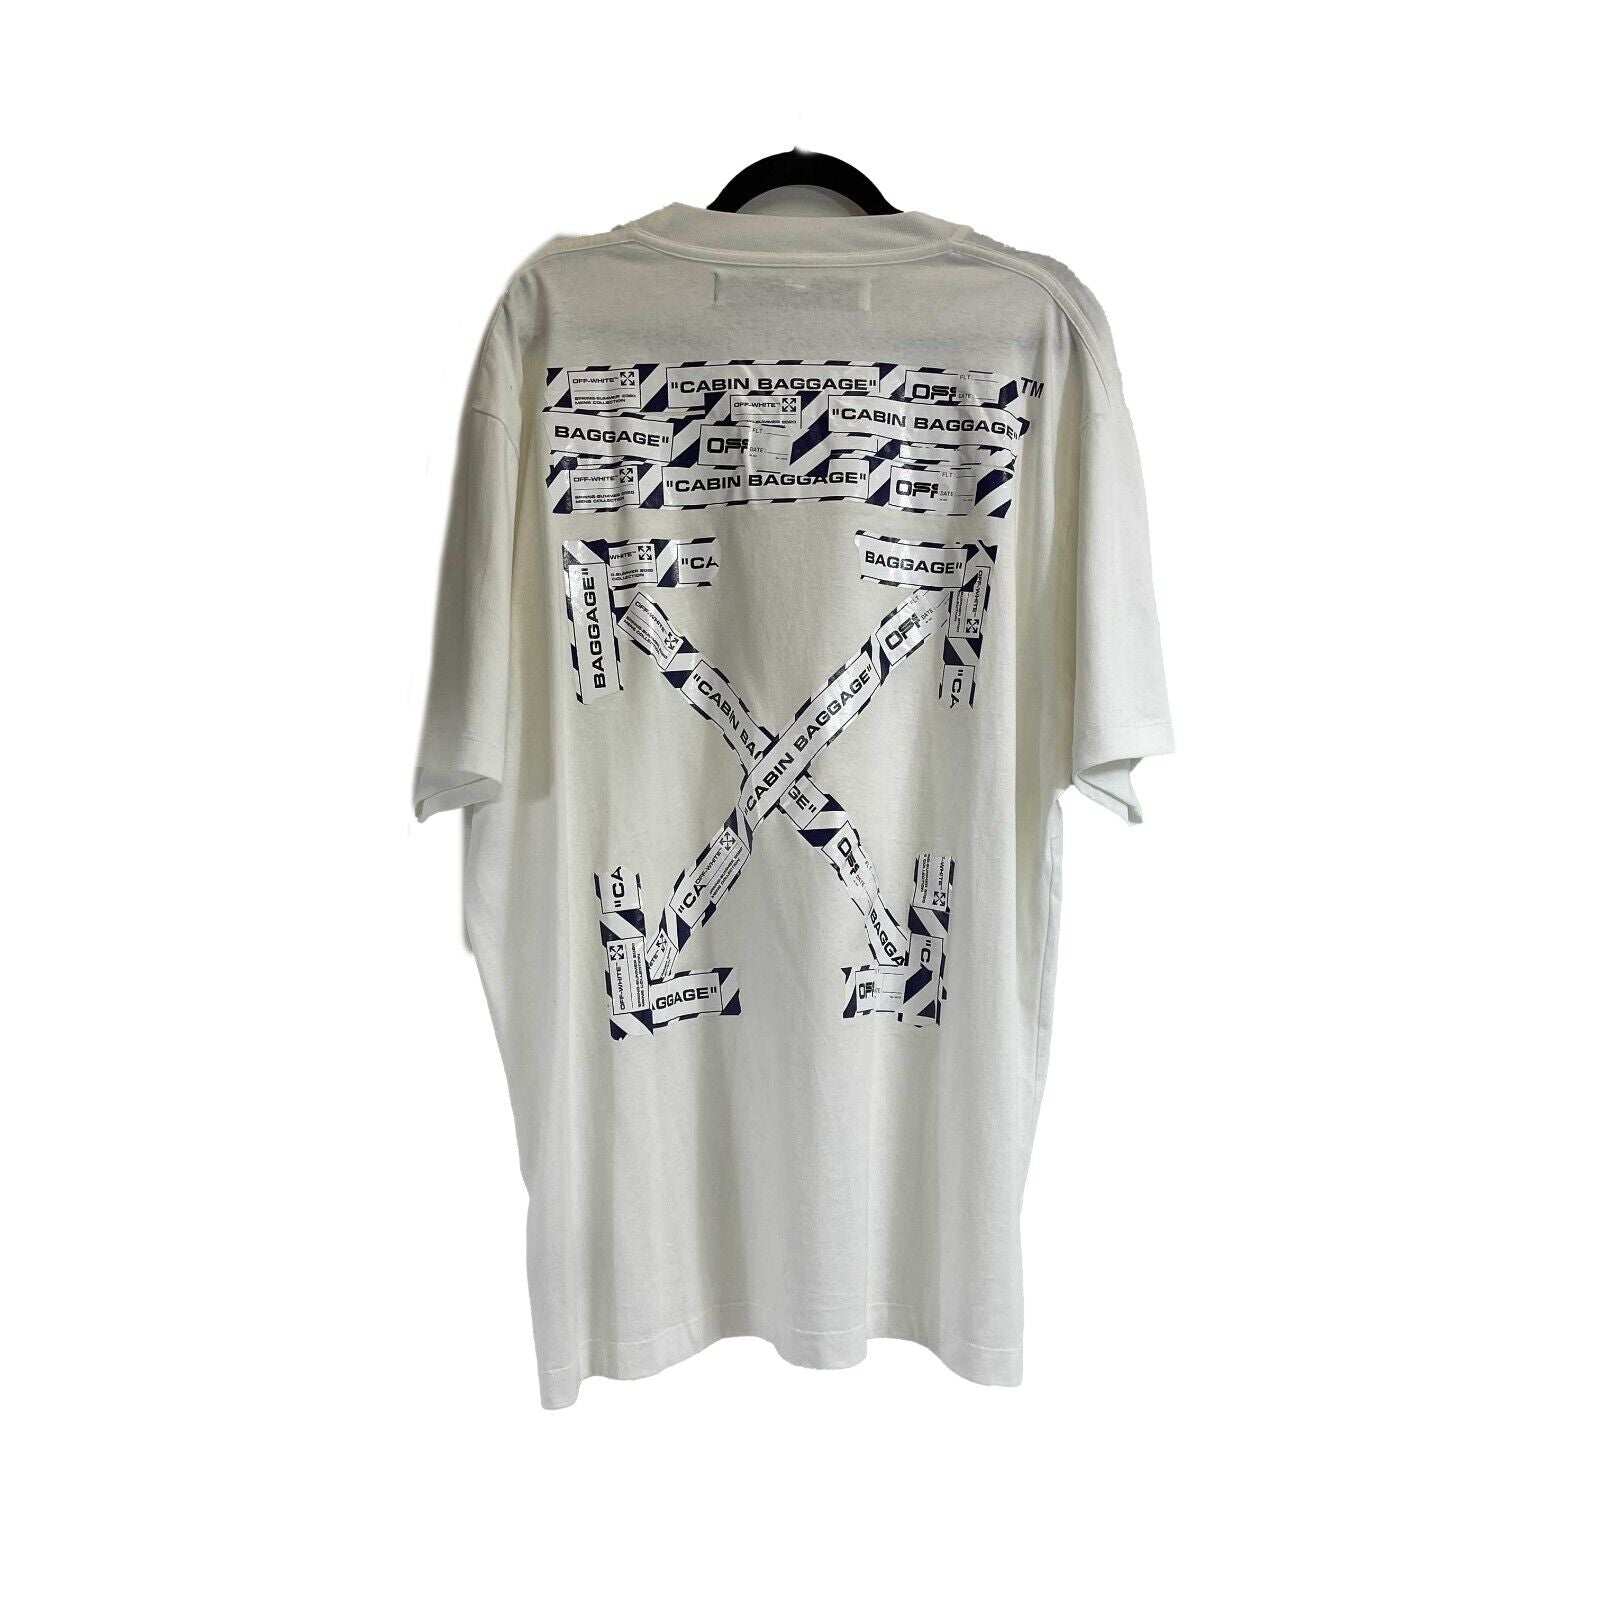 Louis Vuitton - Authenticated T-Shirt - Cotton White Plain for Men, Very Good Condition